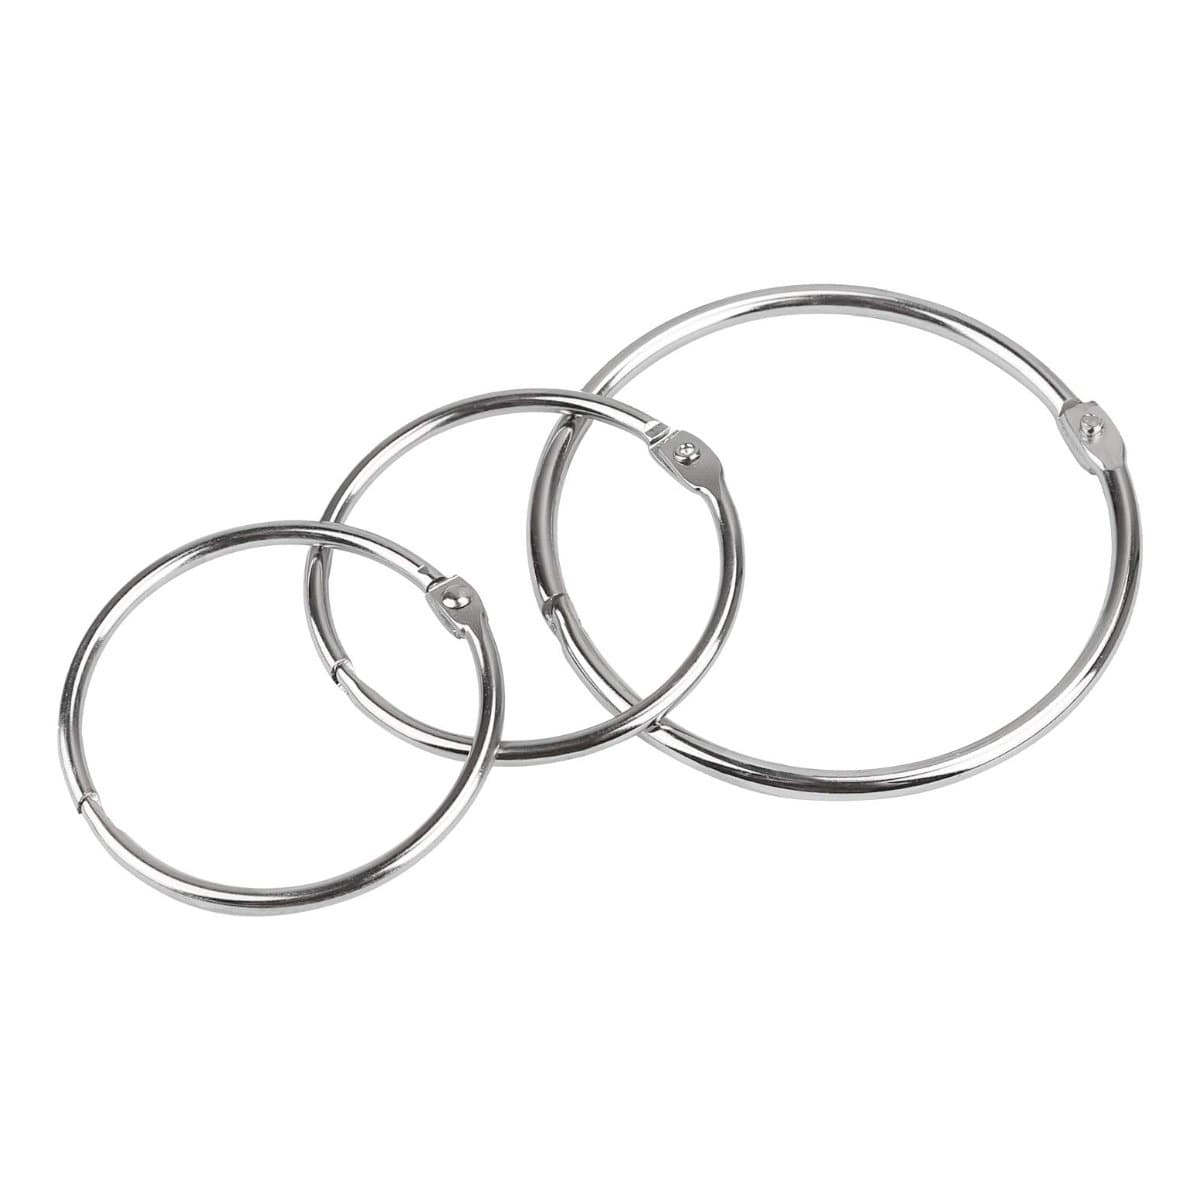 Metal Binder Rings, 20/Pack, Nickel-Plated Price in Doha Qatar ...